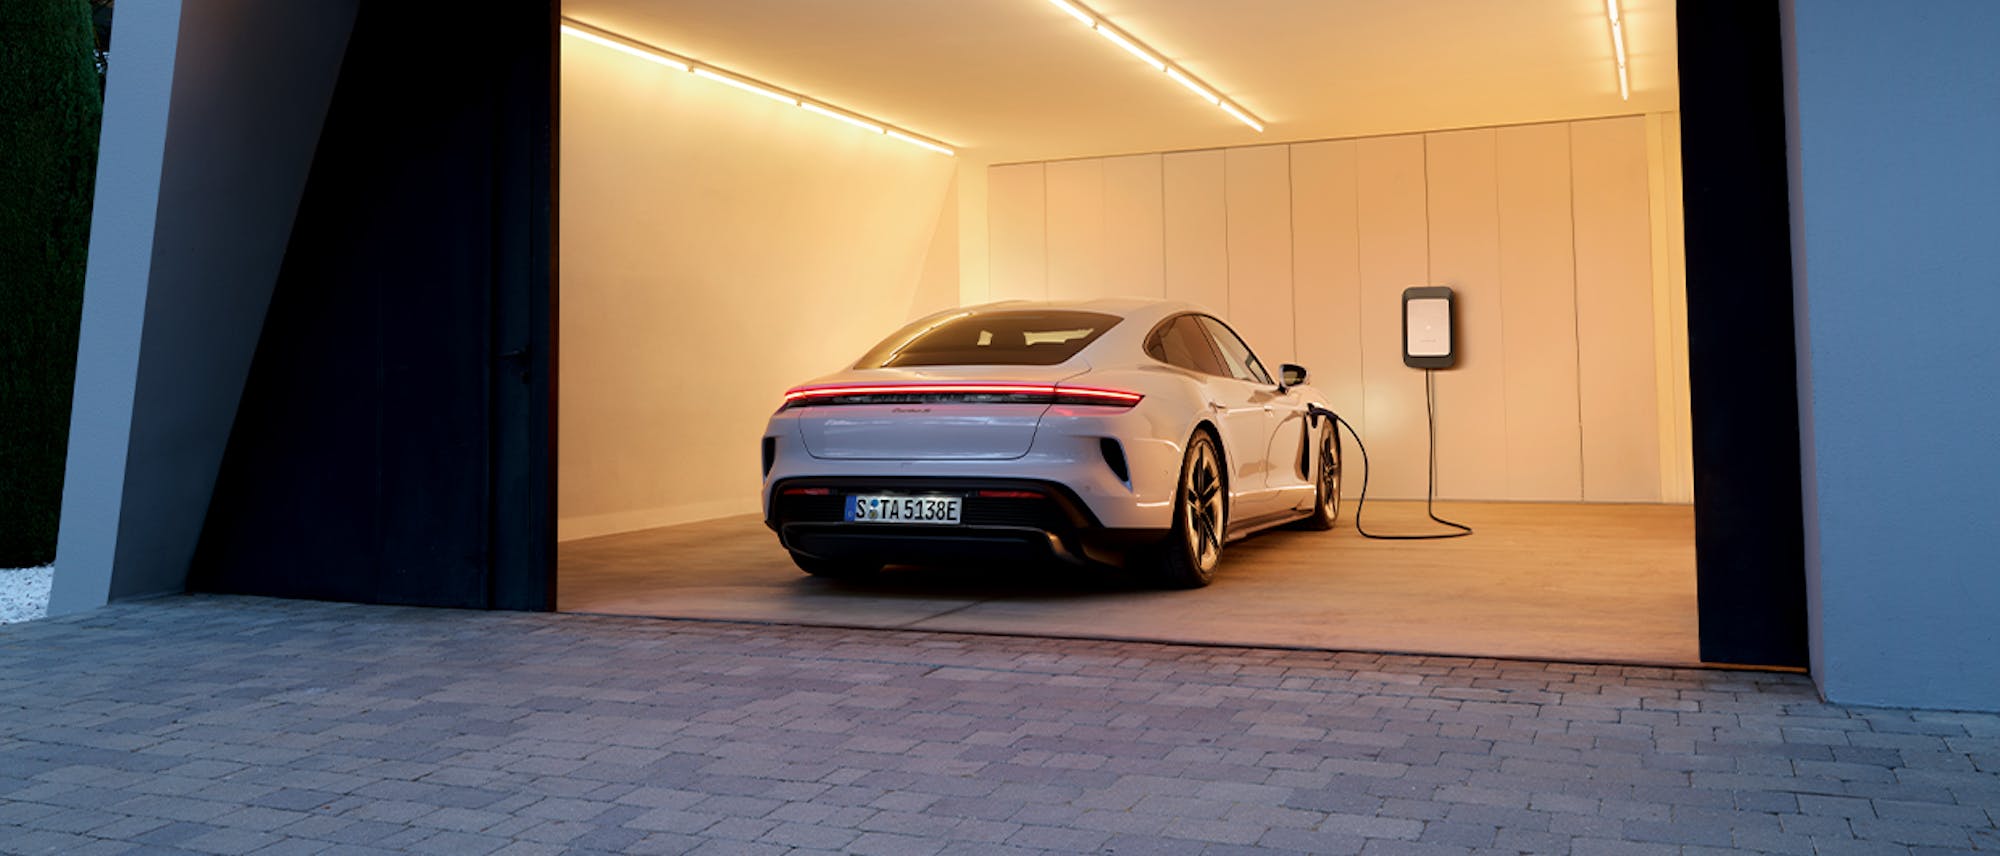 White Porsche Taycan Turbo S charging in a garage